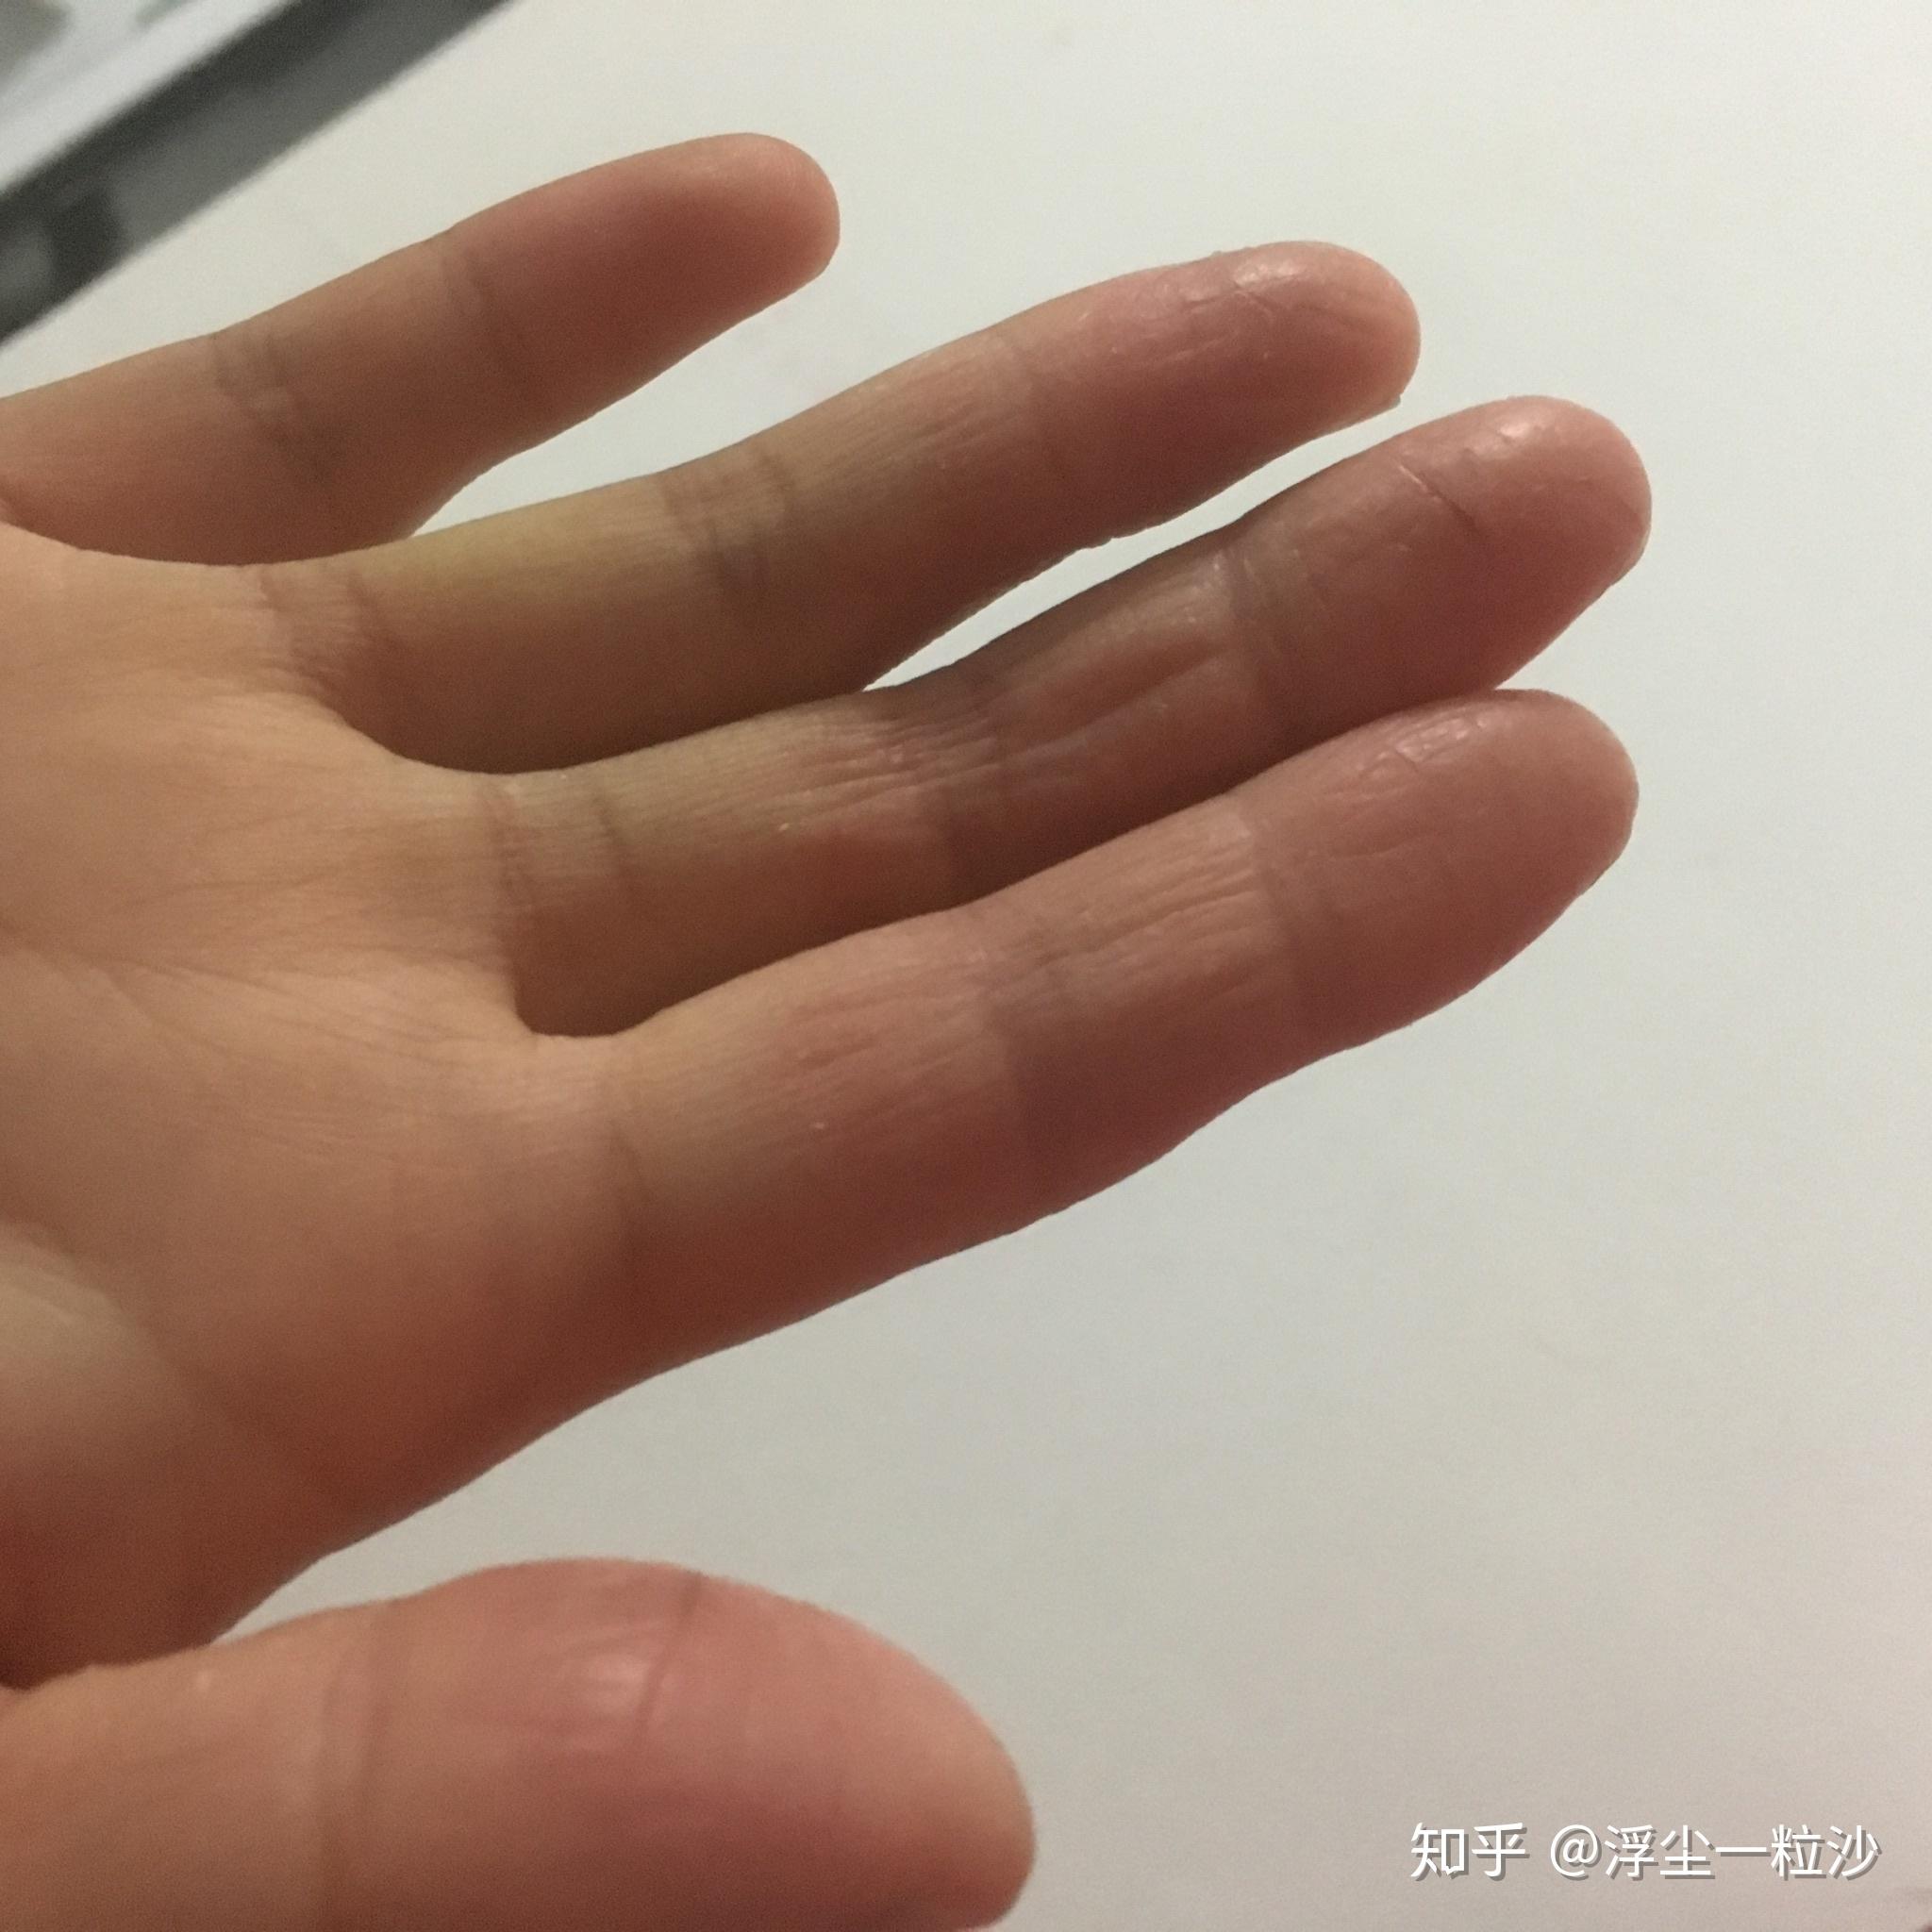 手指起皮,单个手指,干裂,不痒,化验过,不是真菌